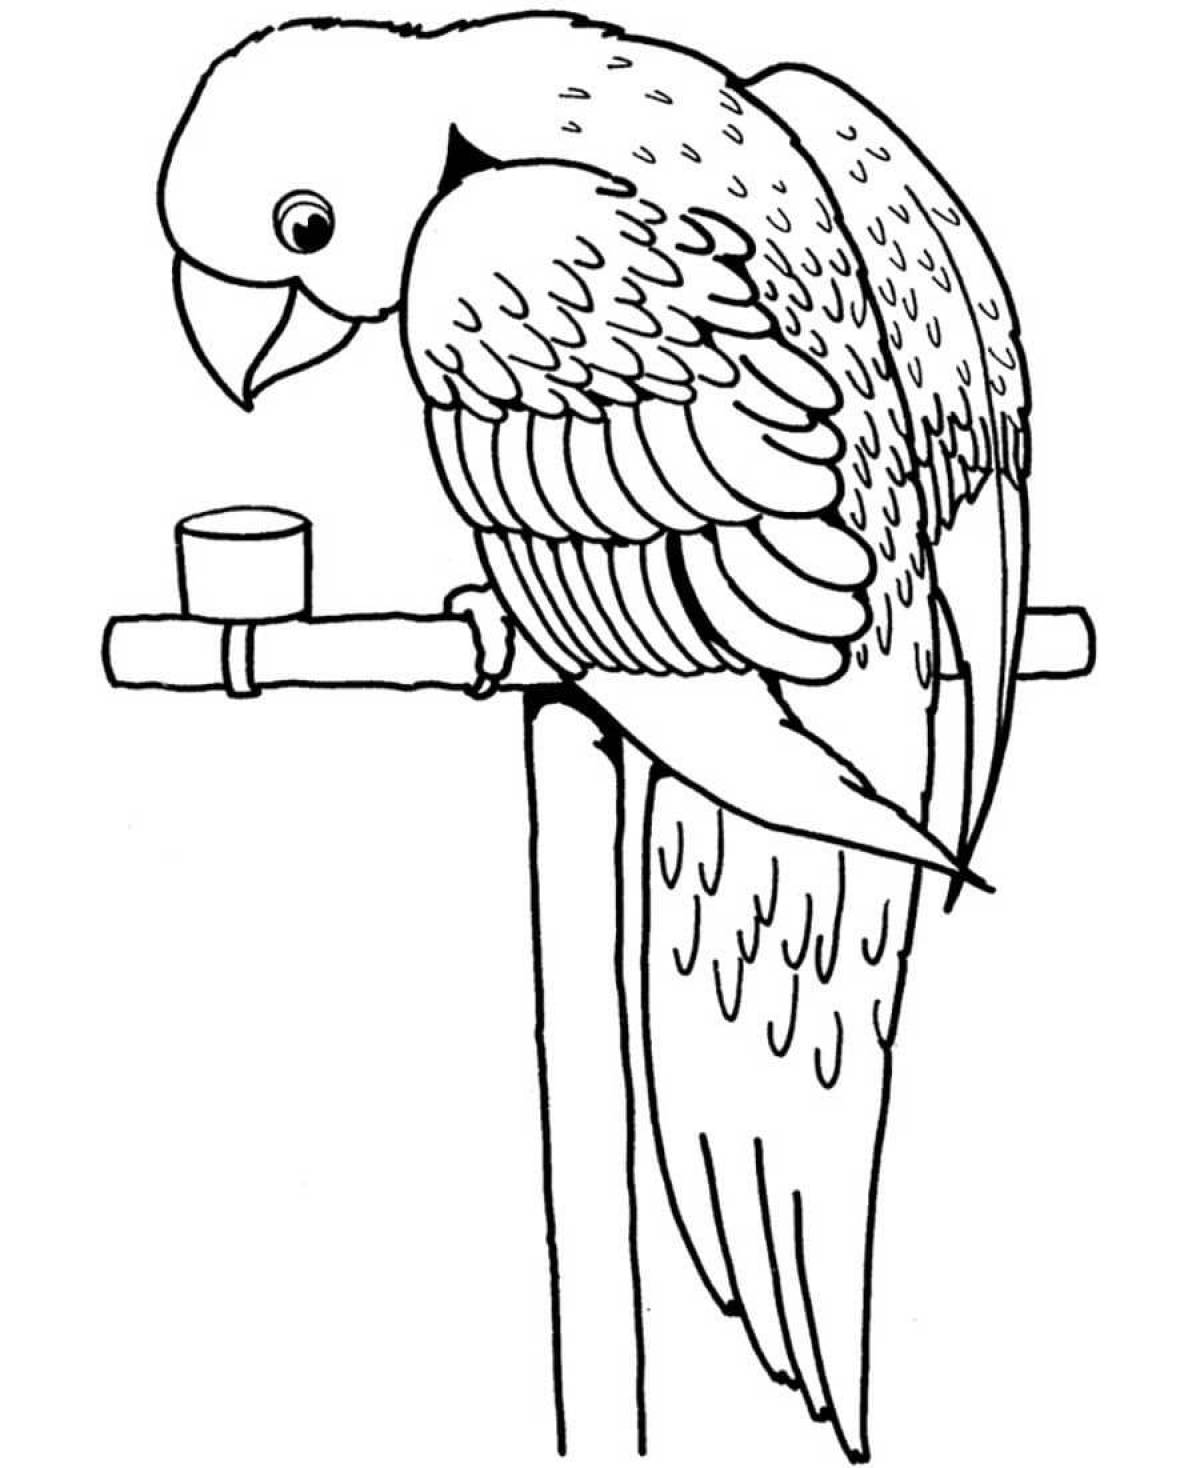 Юмористический попугай раскраска